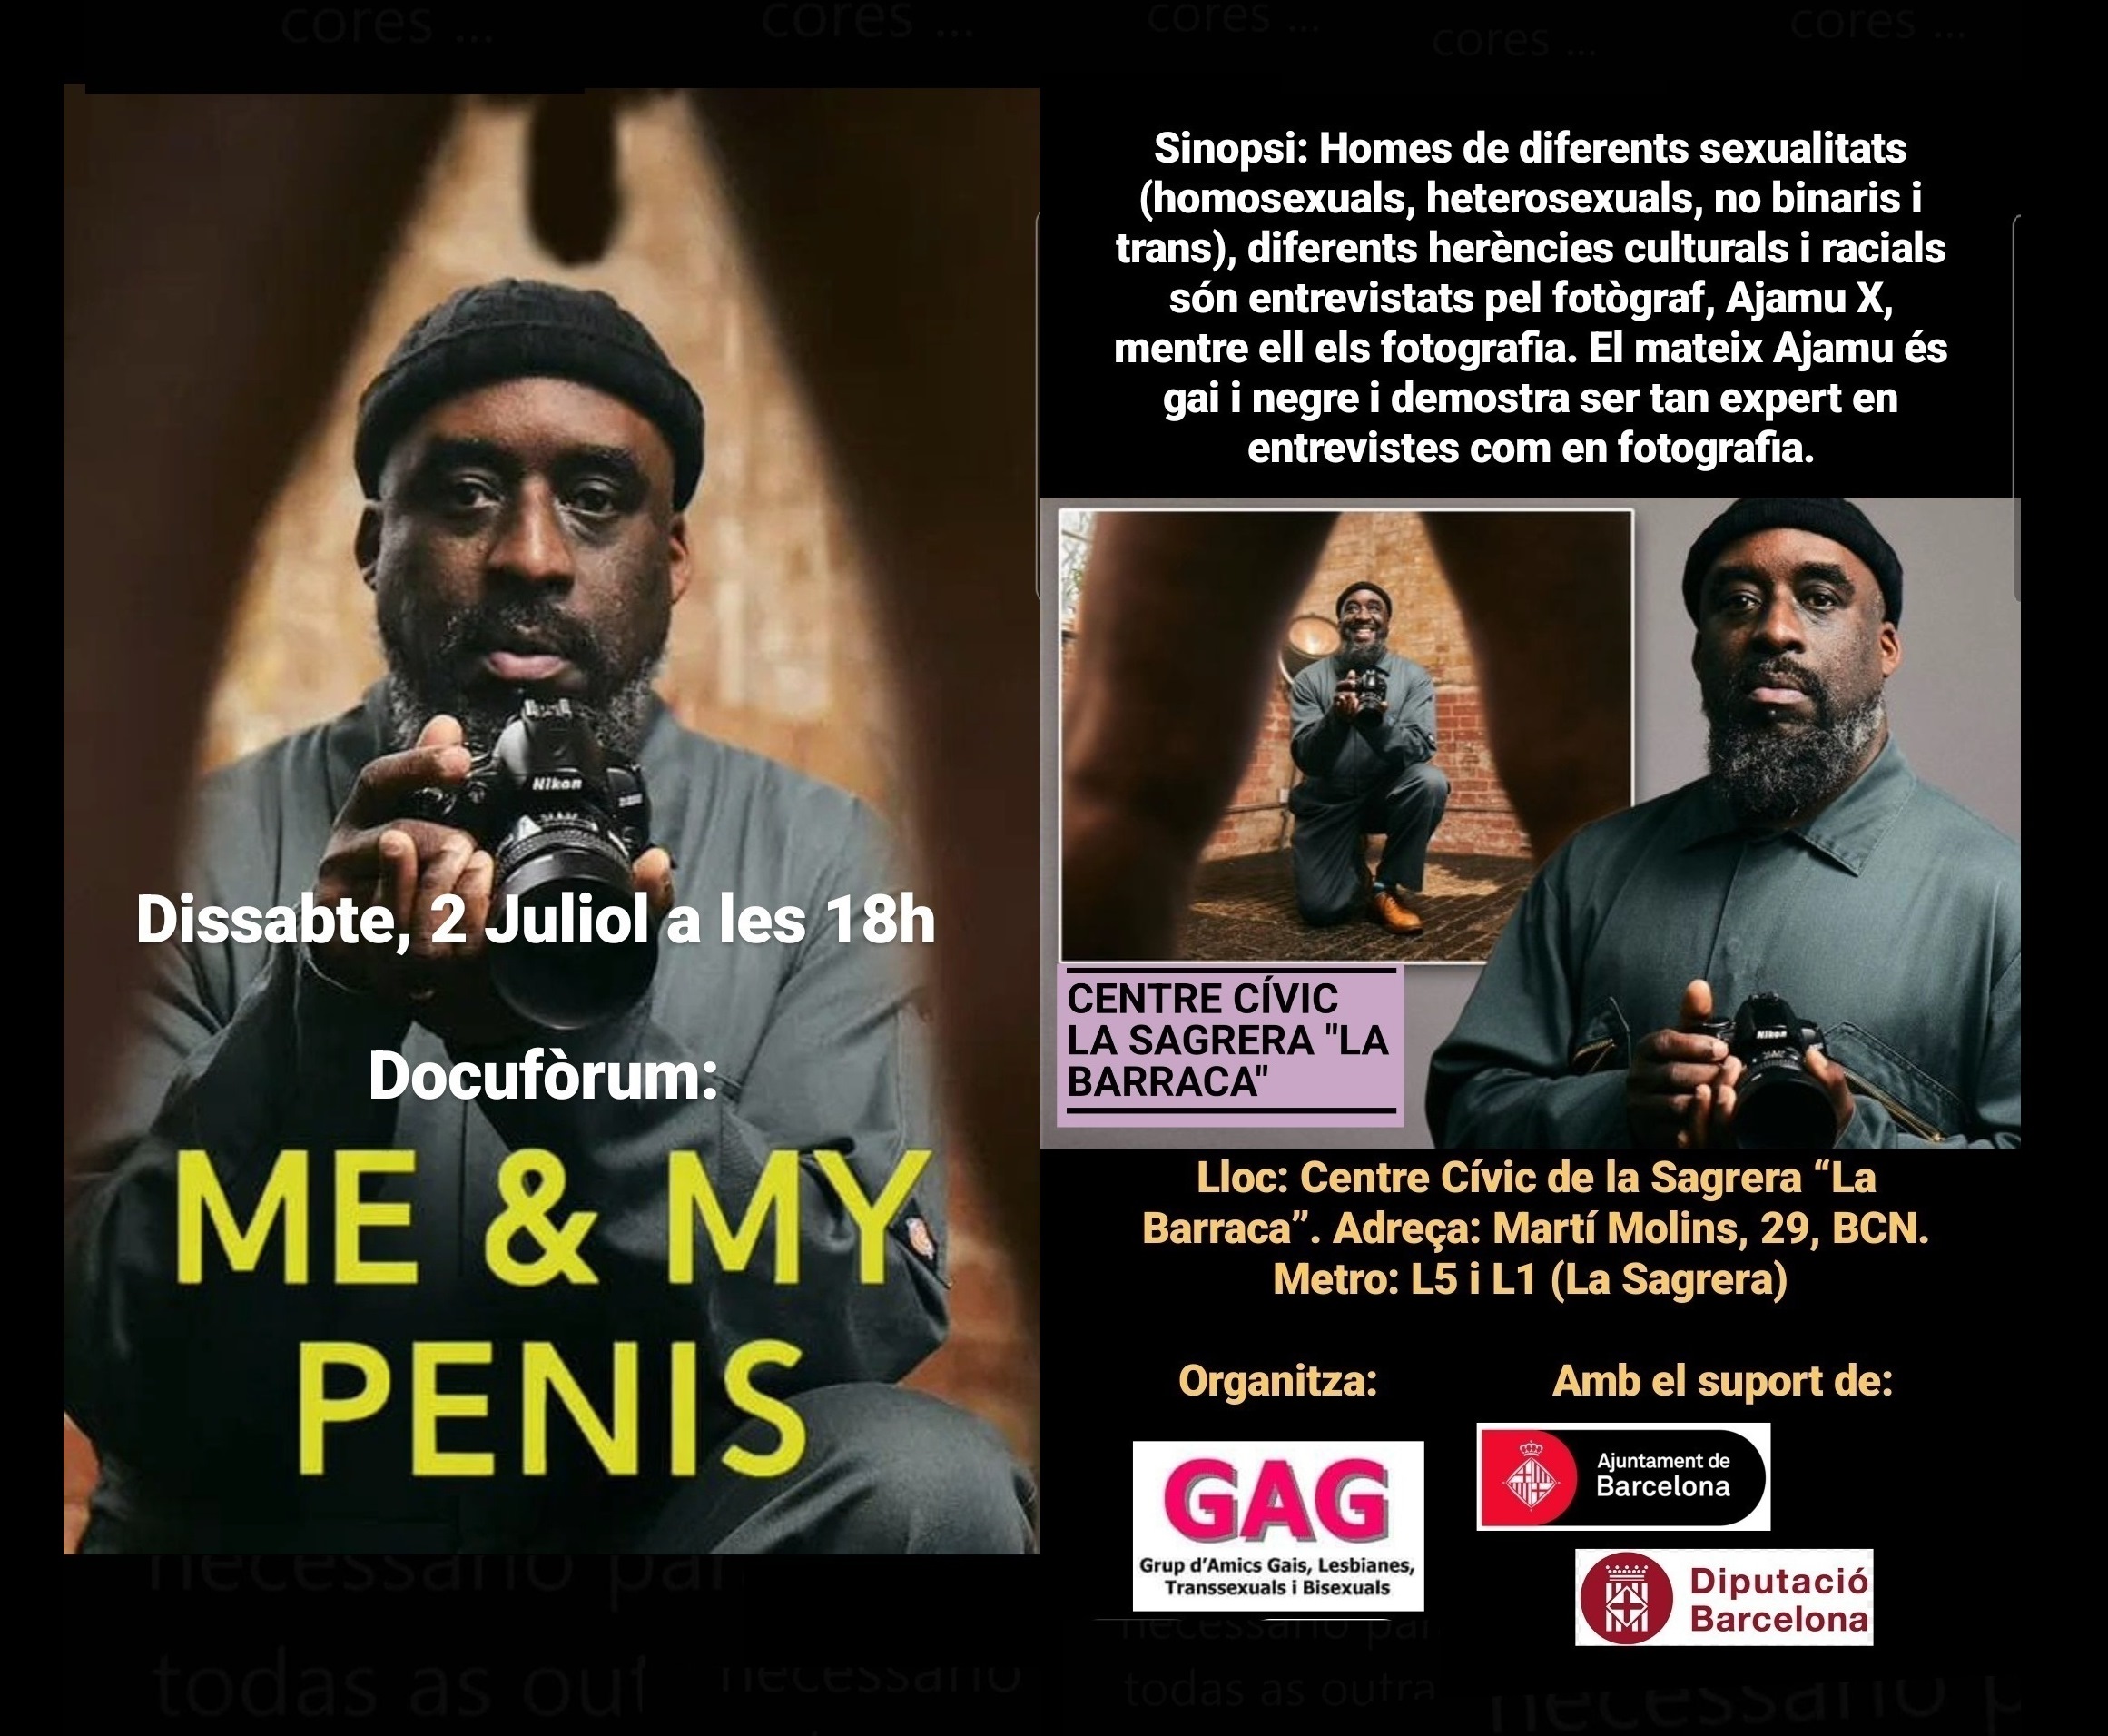 Dissabte, 2 de juliol a les 18h: Docufòrum “Me & My Penis”